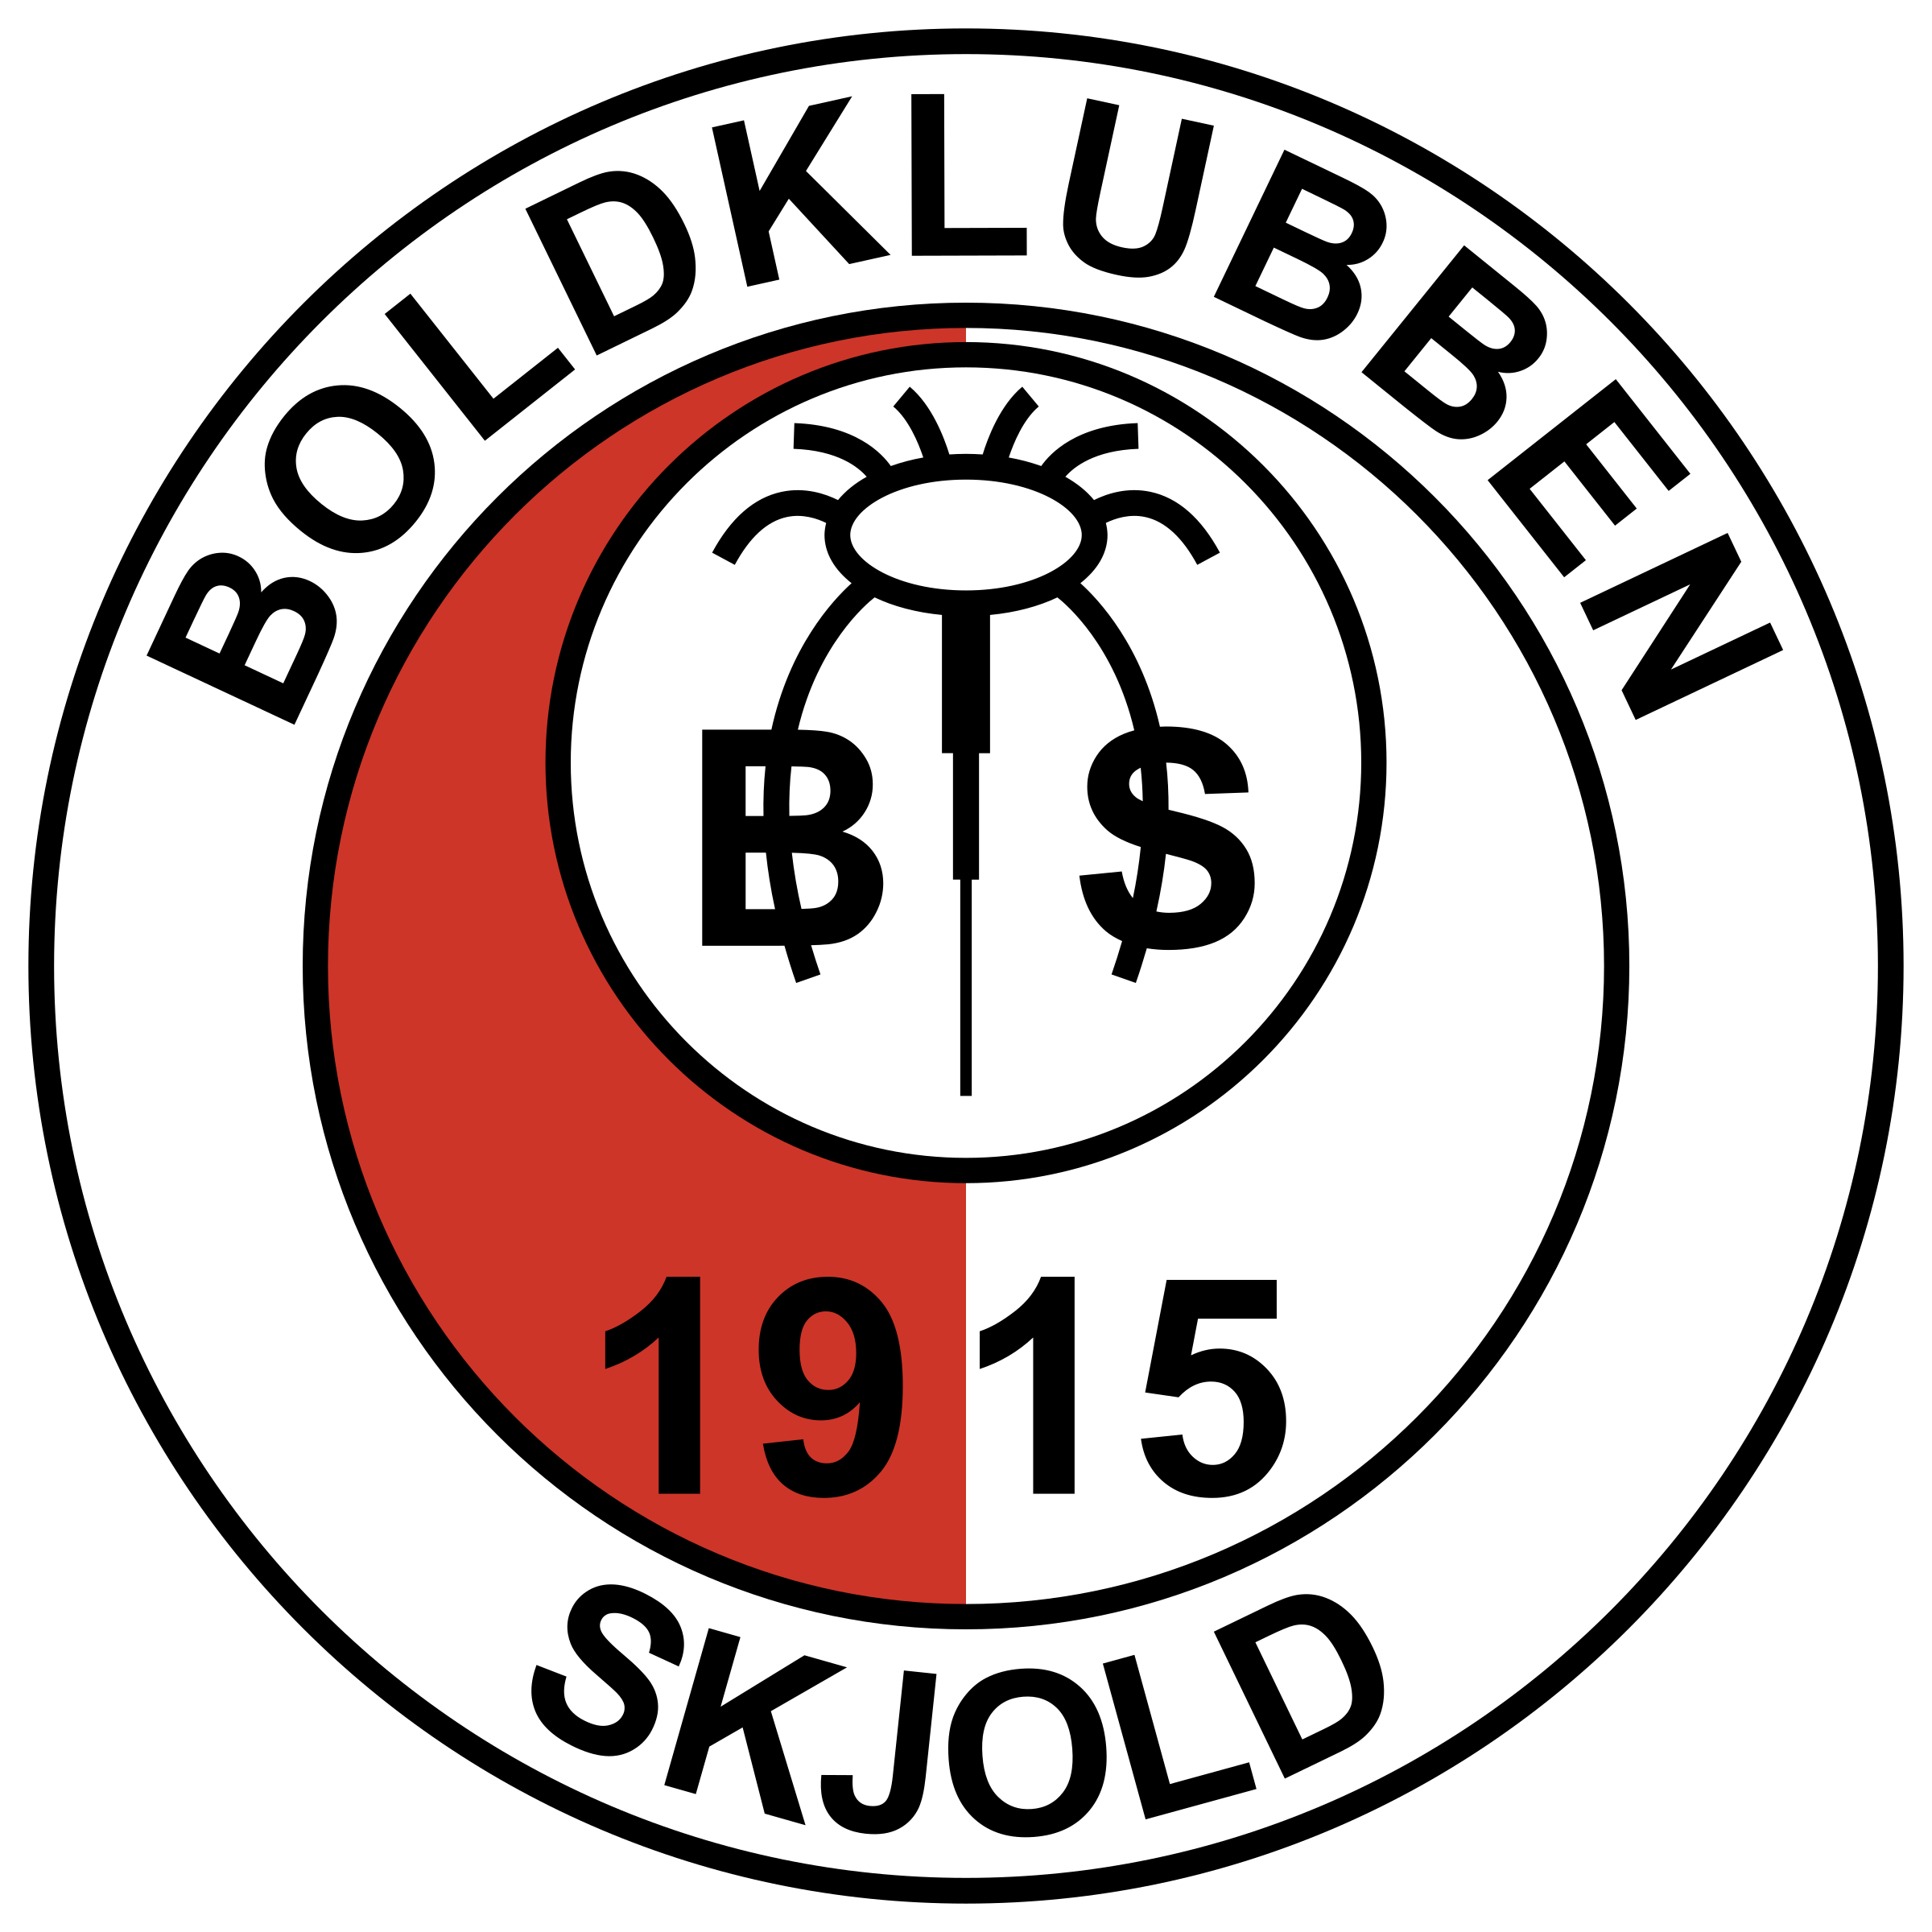 Boldklubben-skjold-logo-png-transparent